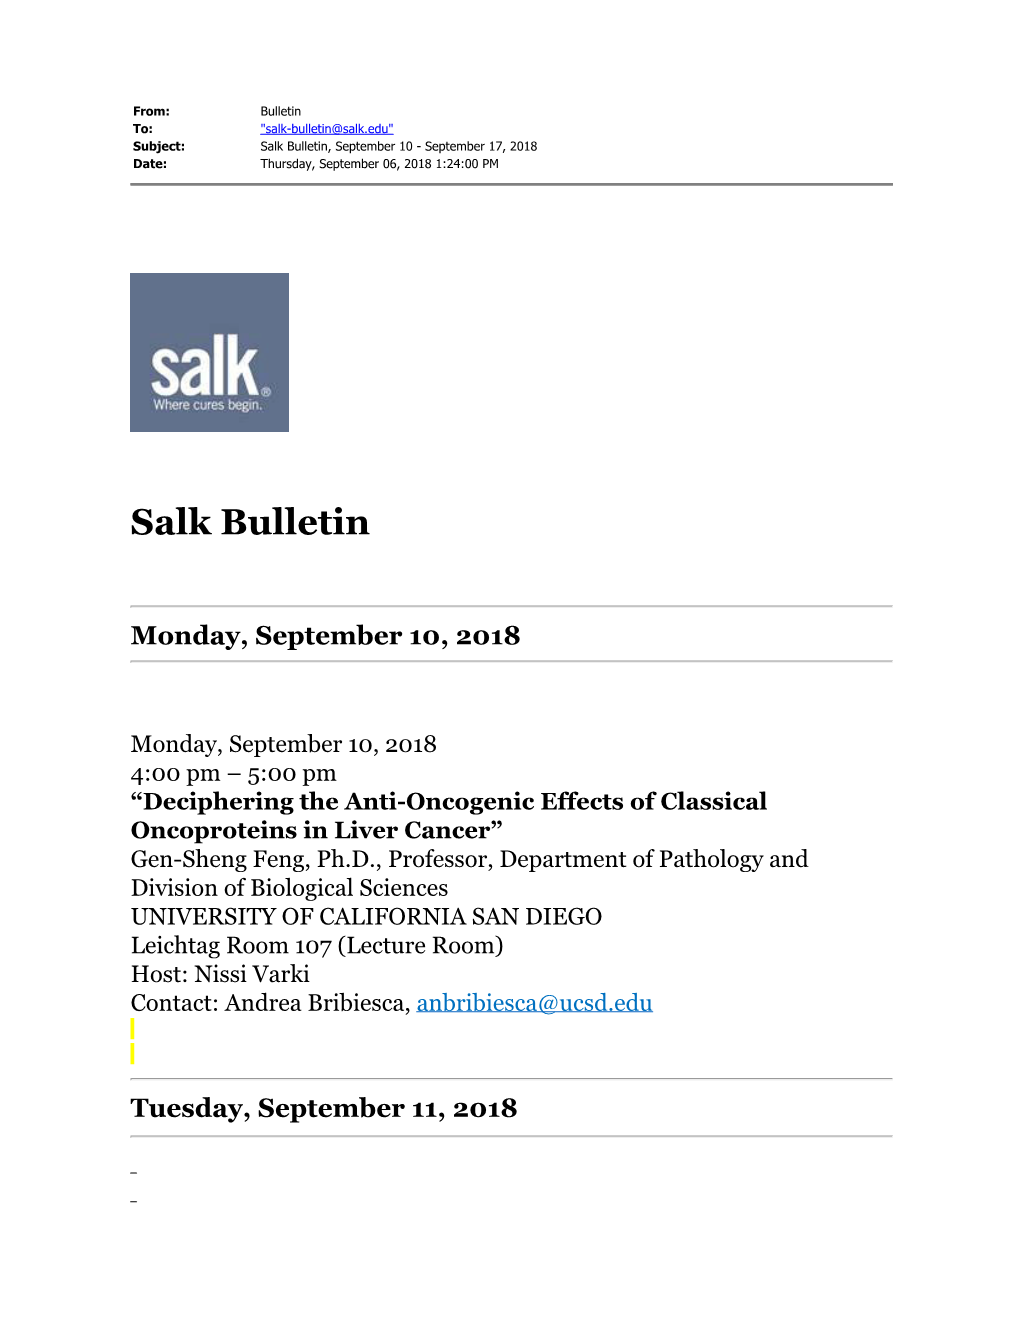 Salk Bulletin, September 10 - September 17, 2018 Date: Thursday, September 06, 2018 1:24:00 PM